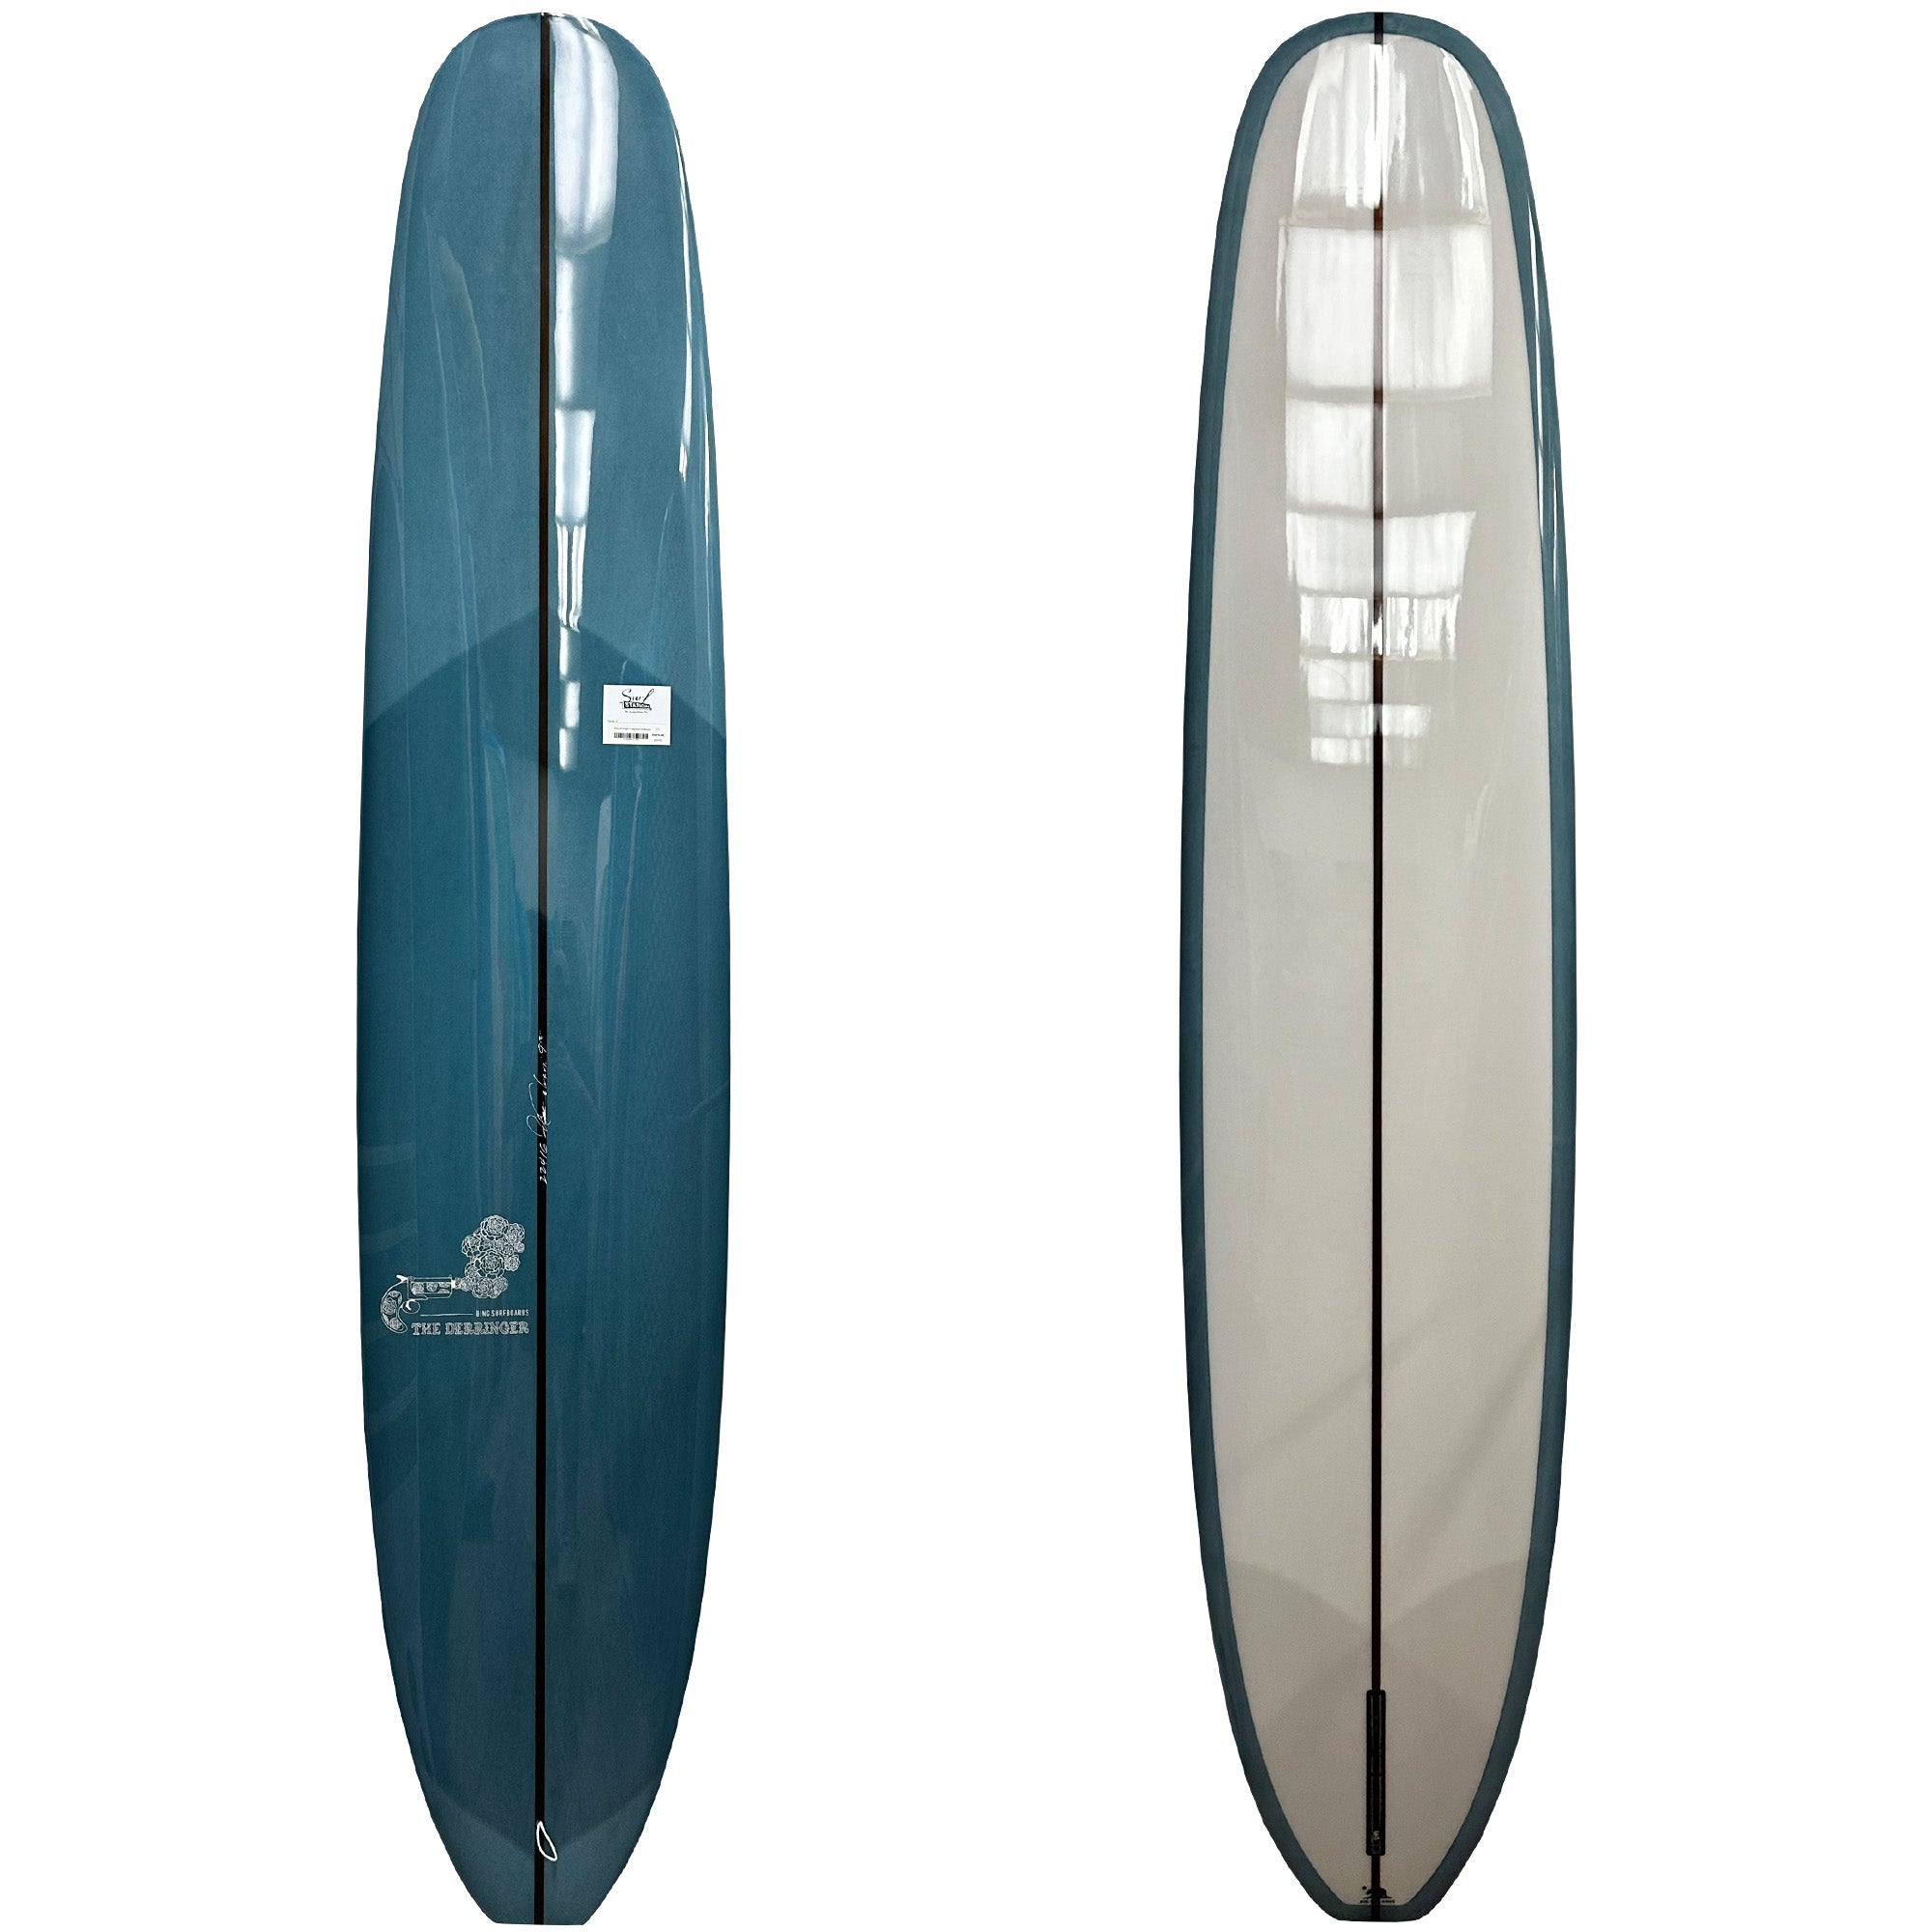 Bing Derringer Longboard Surfboard